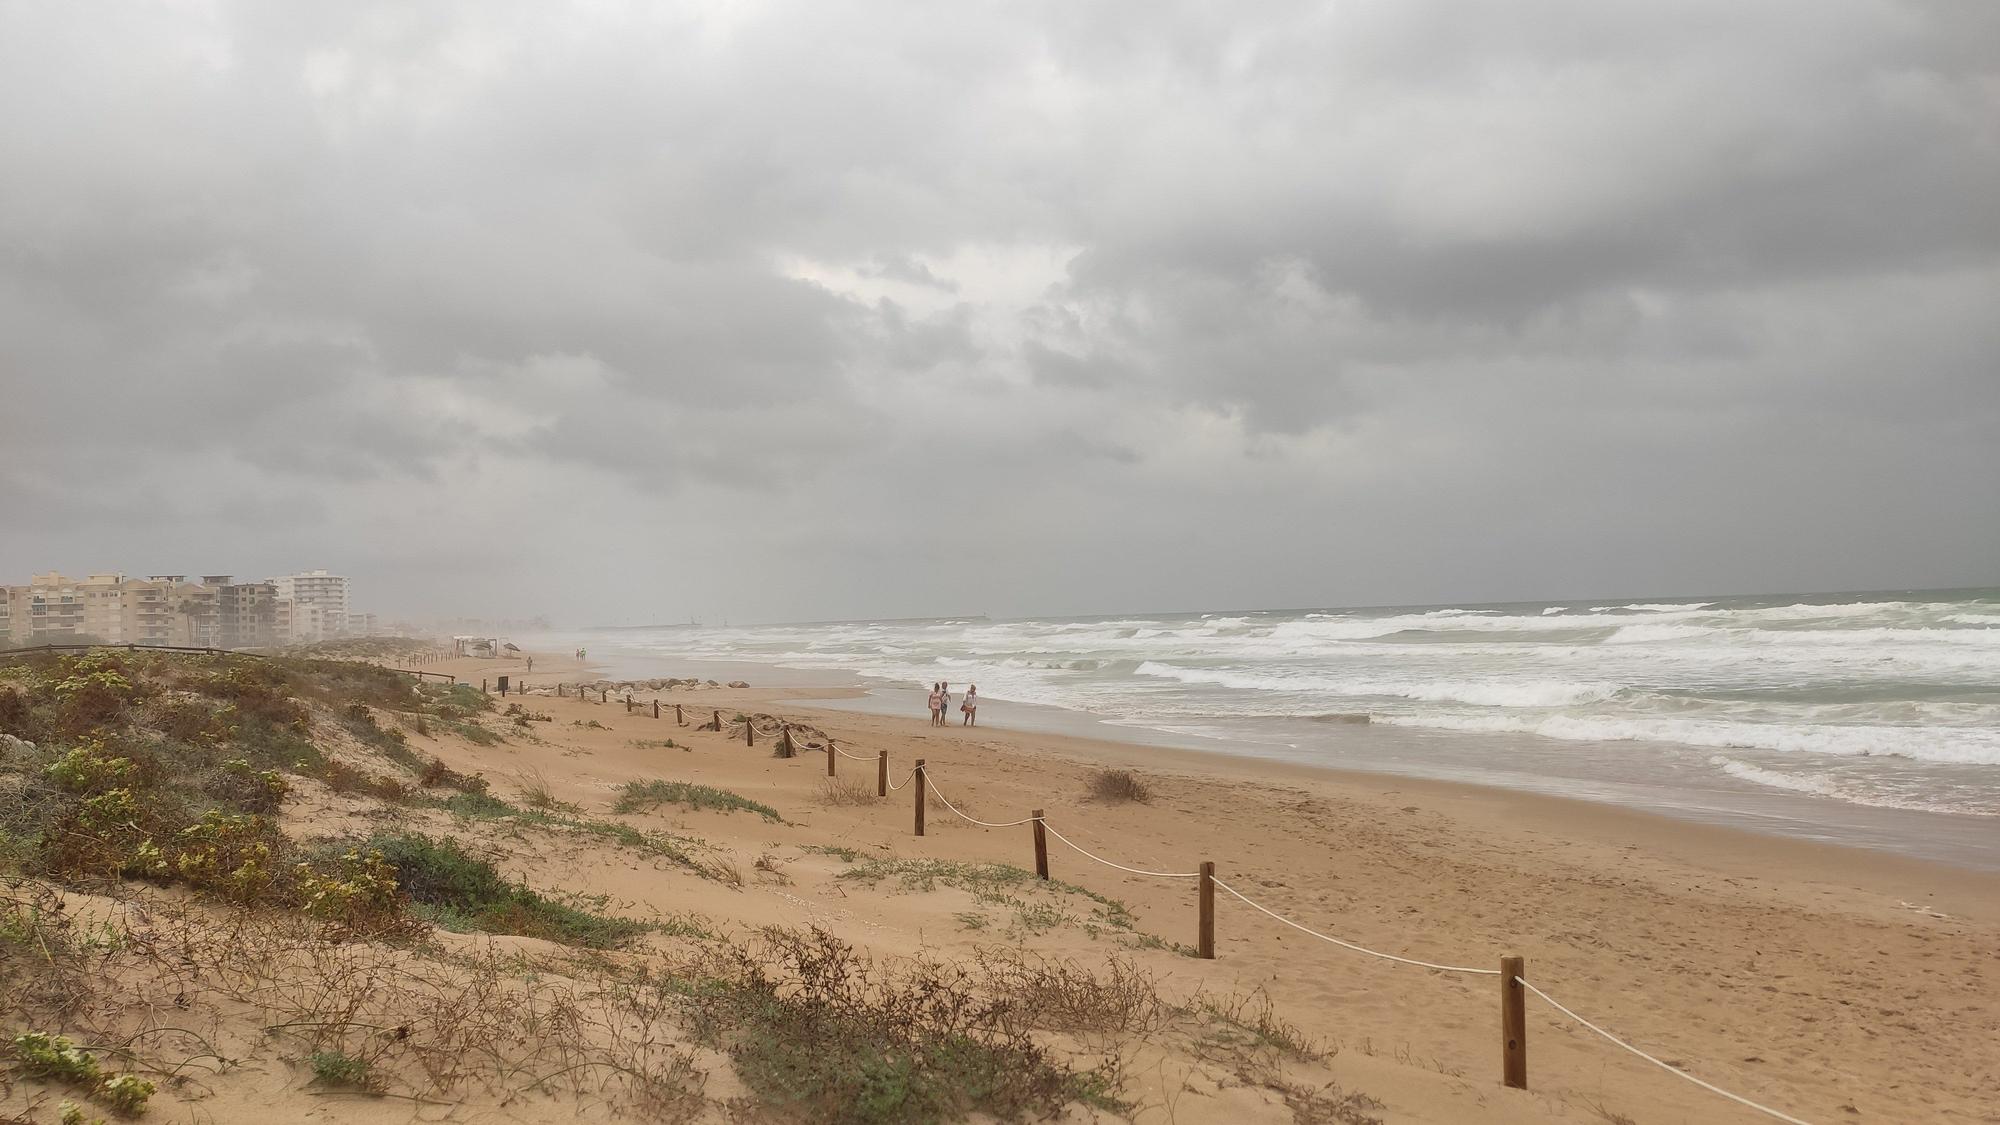 El temporal en la playa de Guardamar.jpg